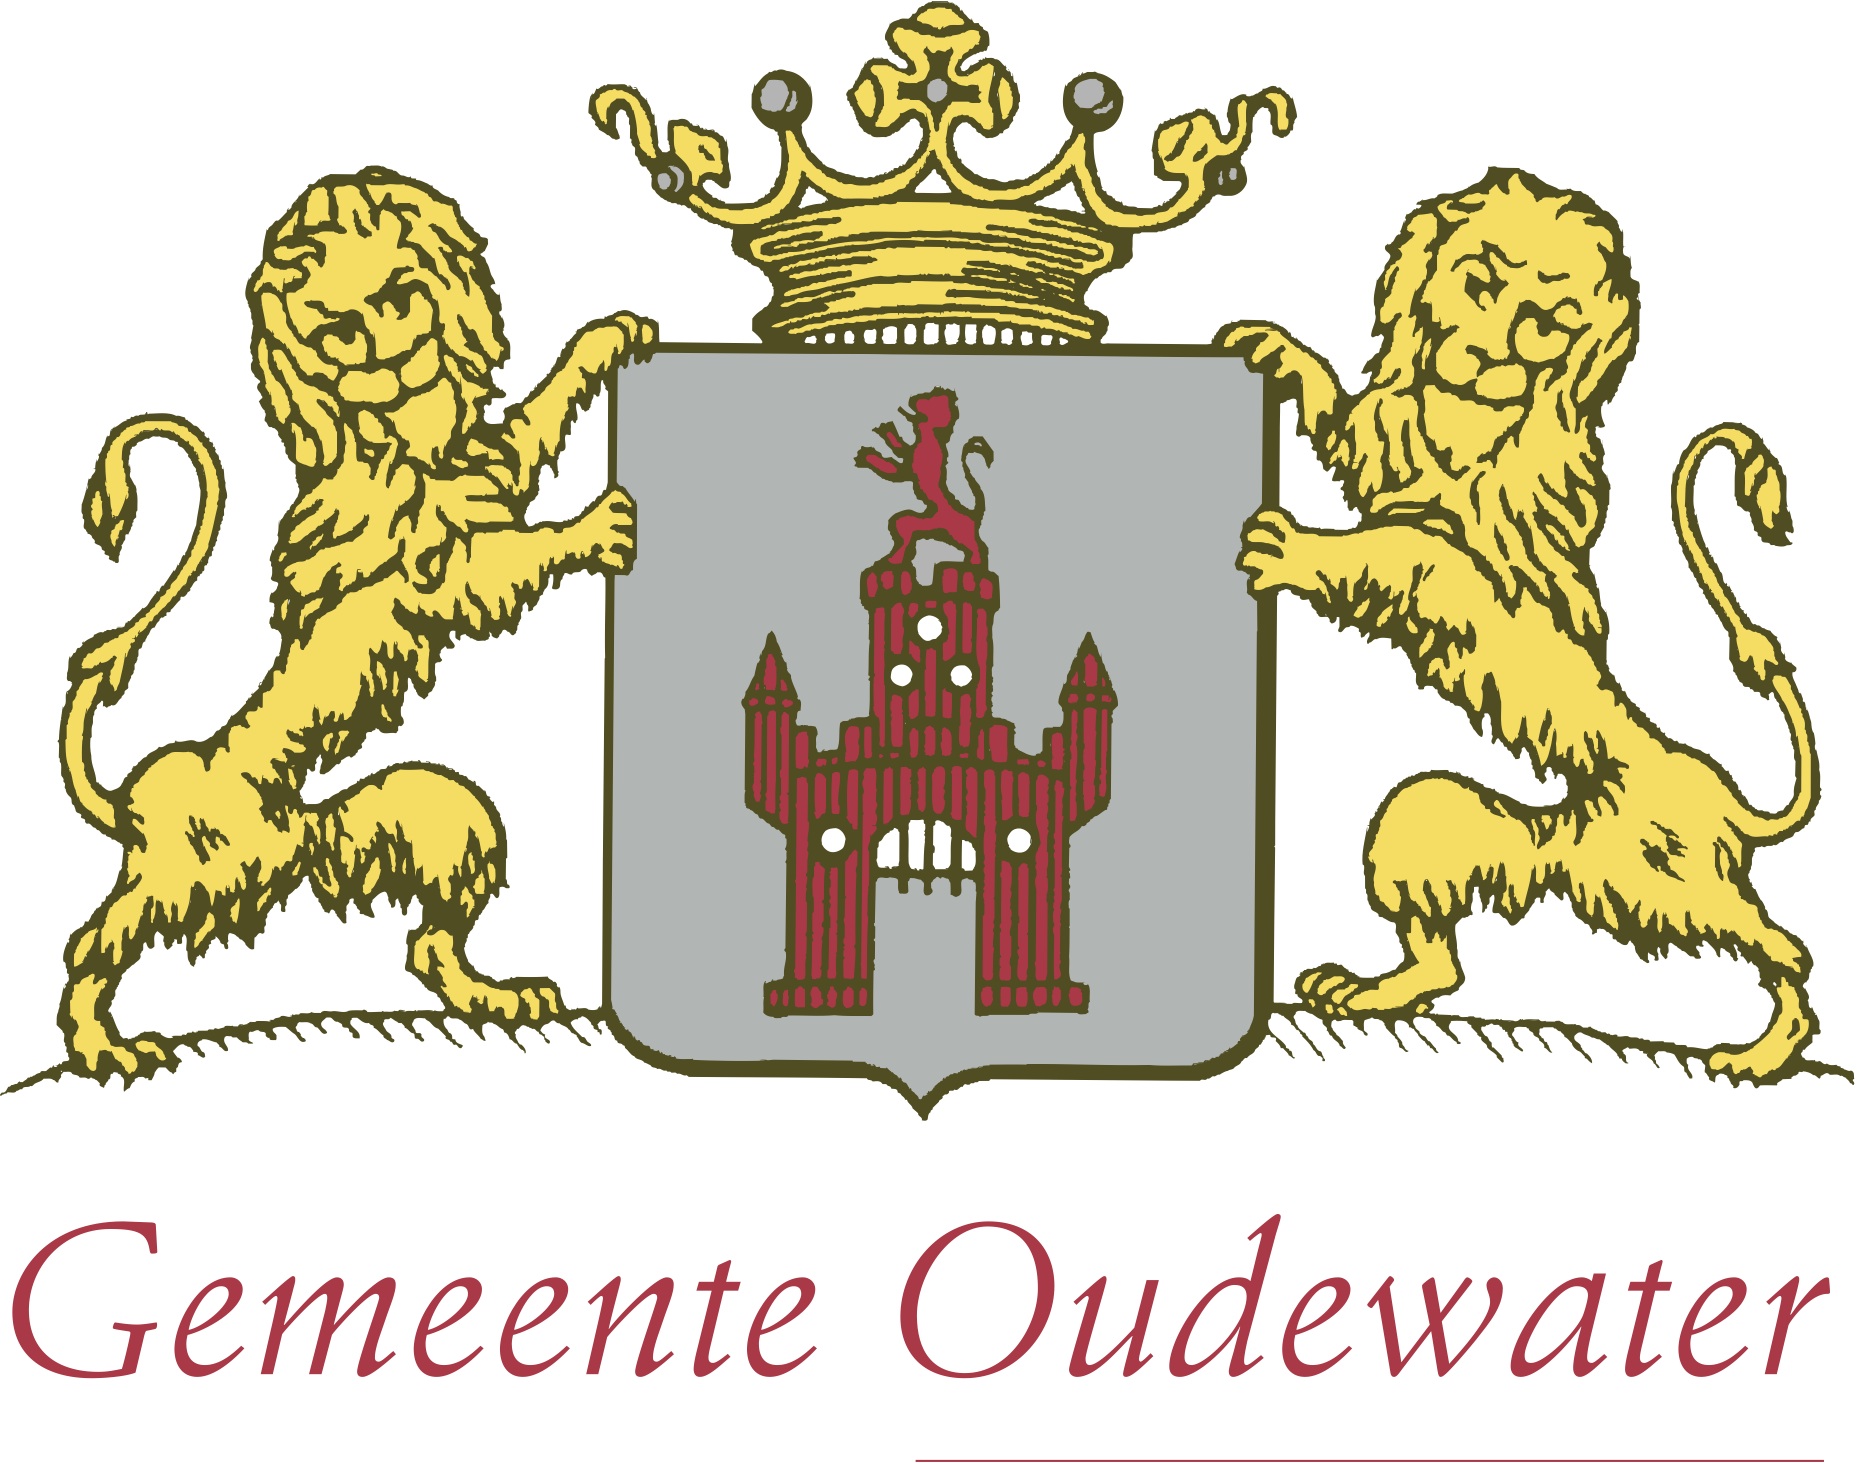 Masterplan Binnenstad Oudewater logo